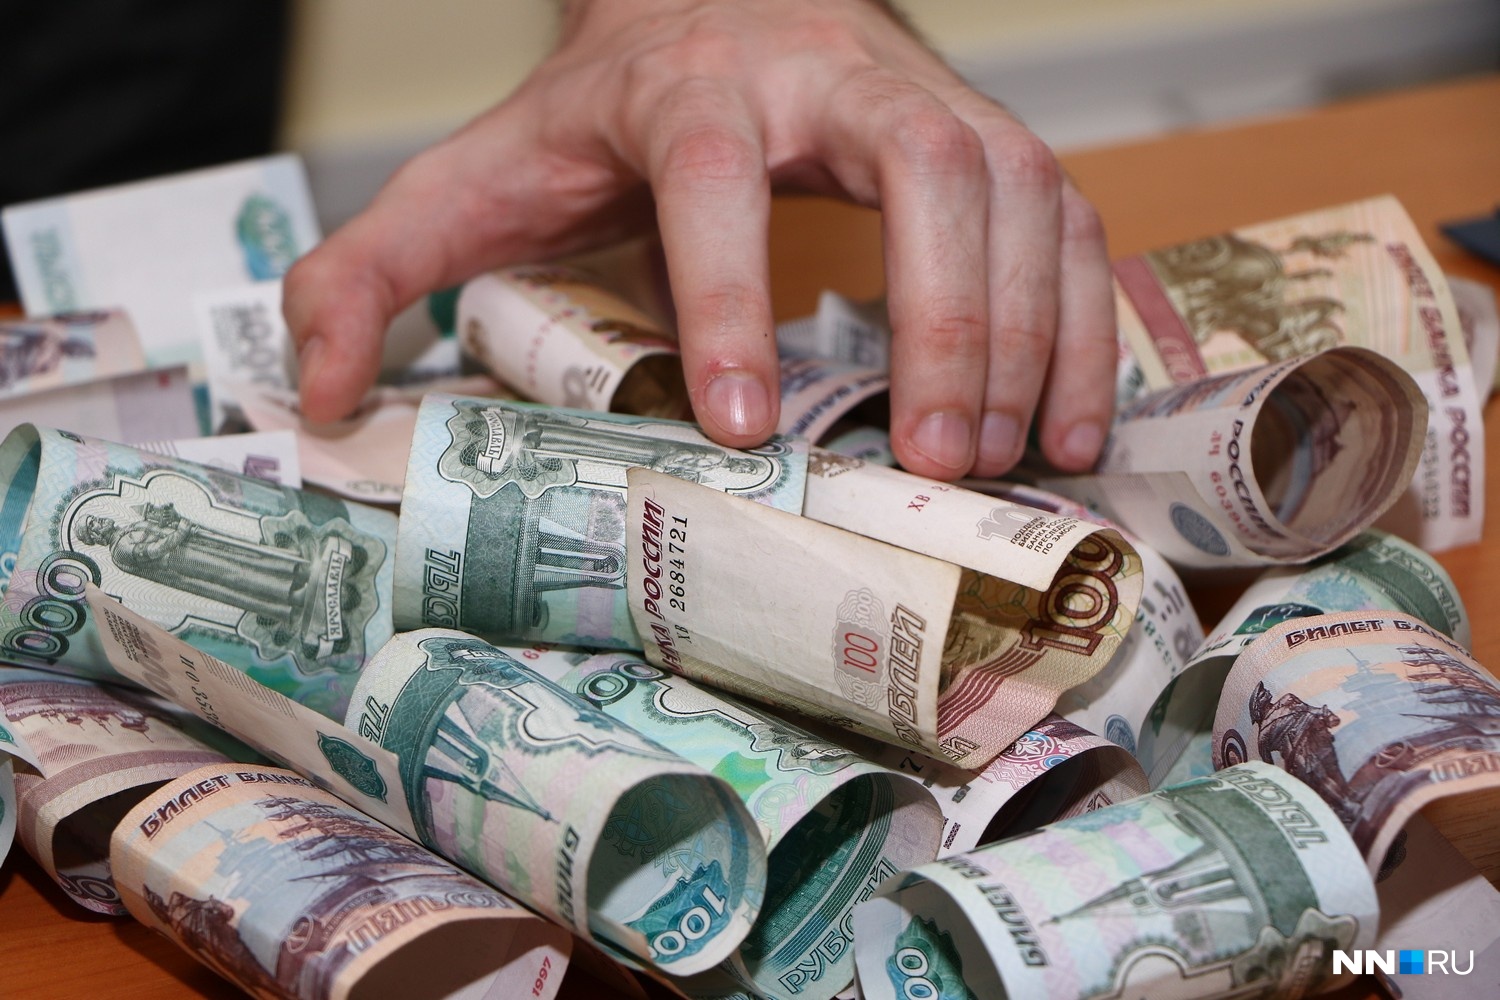 Банкир оформил 45 кредитов от имени клиентов на 20 млн рублей в
Нижнем Новгороде